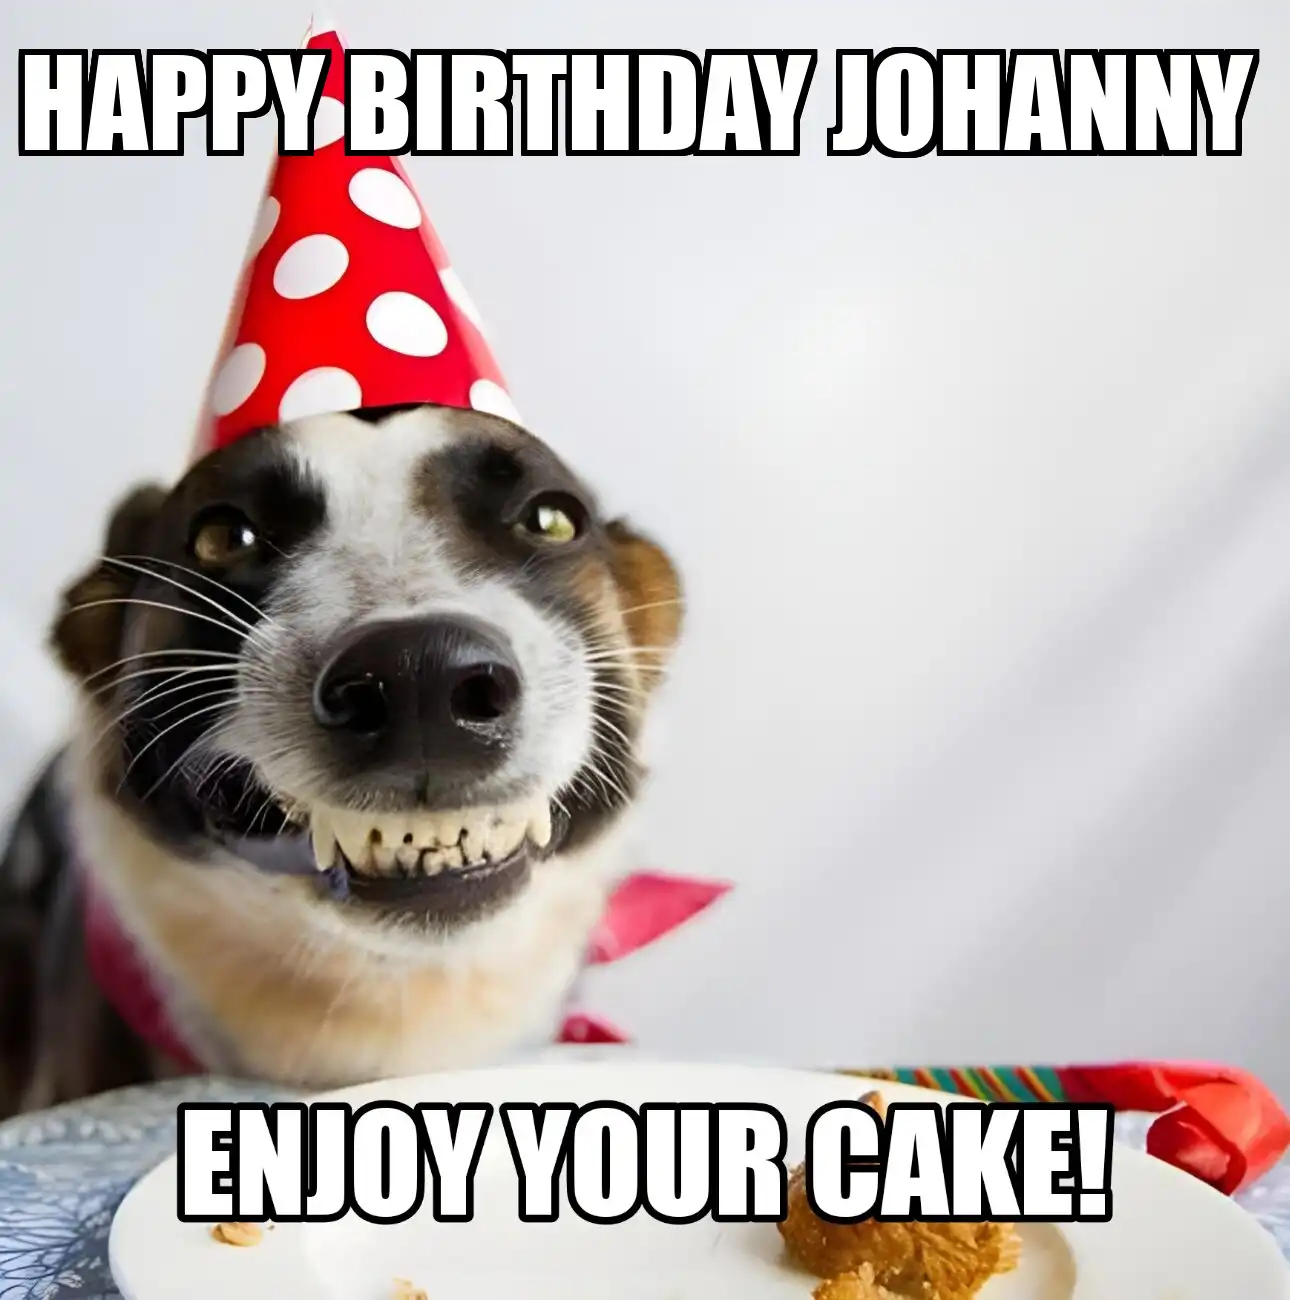 Happy Birthday Johanny Enjoy Your Cake Dog Meme